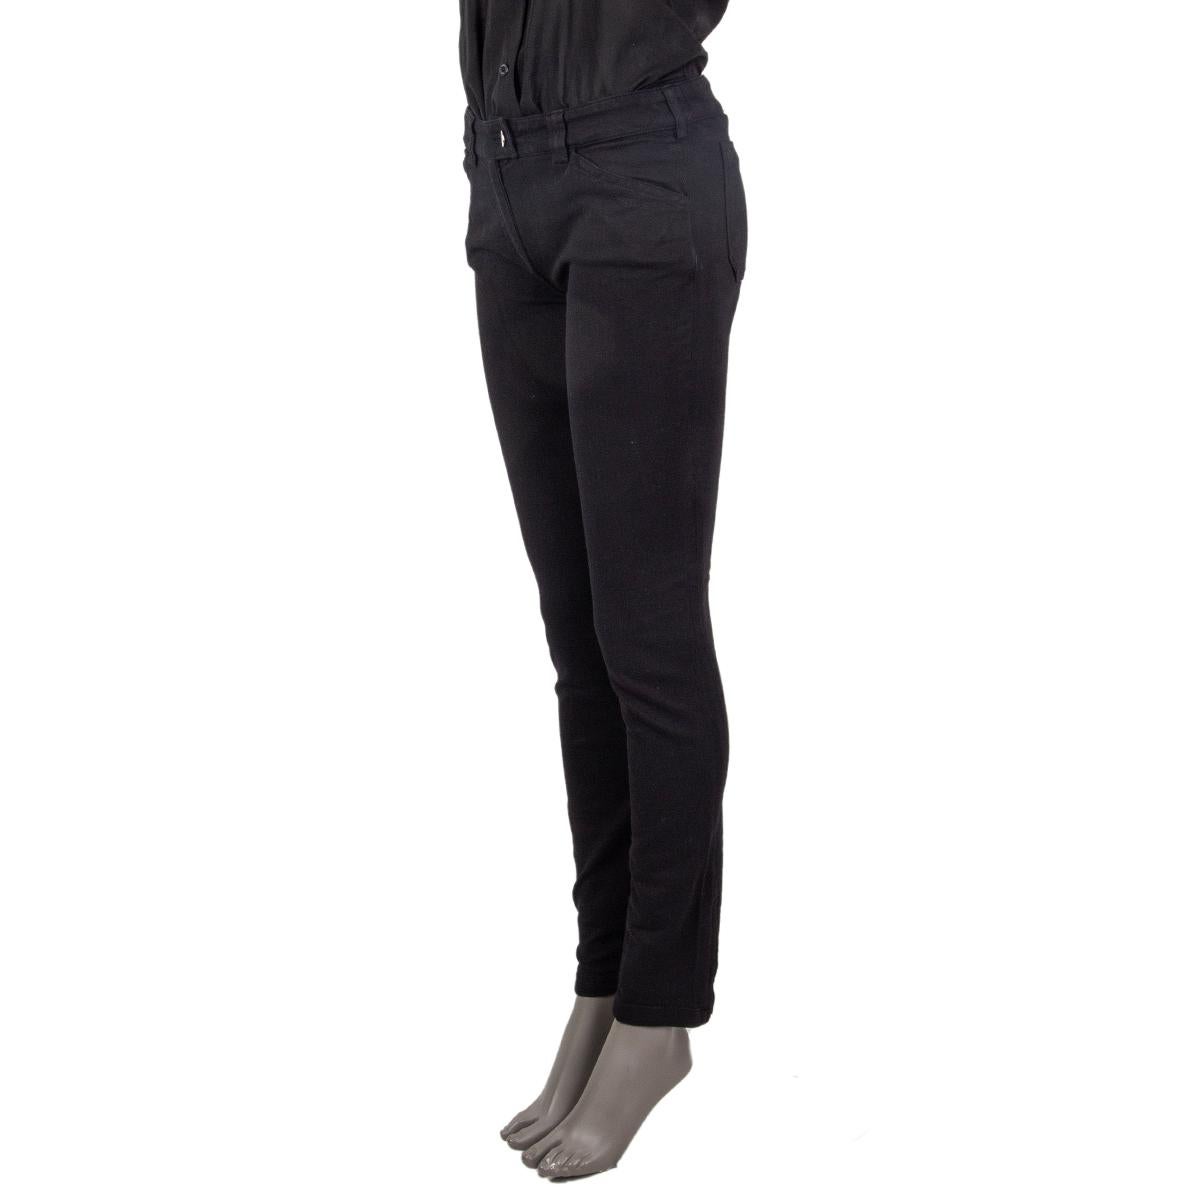 100% authentische Balenciaga Skinny-Jeans mit Reißverschluss aus schwarzer Baumwolle (98%) und Elastan (2%) mit Gesäß- und Vordertaschen. Auf der Vorderseite mit einem Reißverschluss und einem Knopf zu schließen. Unbeschriftet. Sie wurden getragen